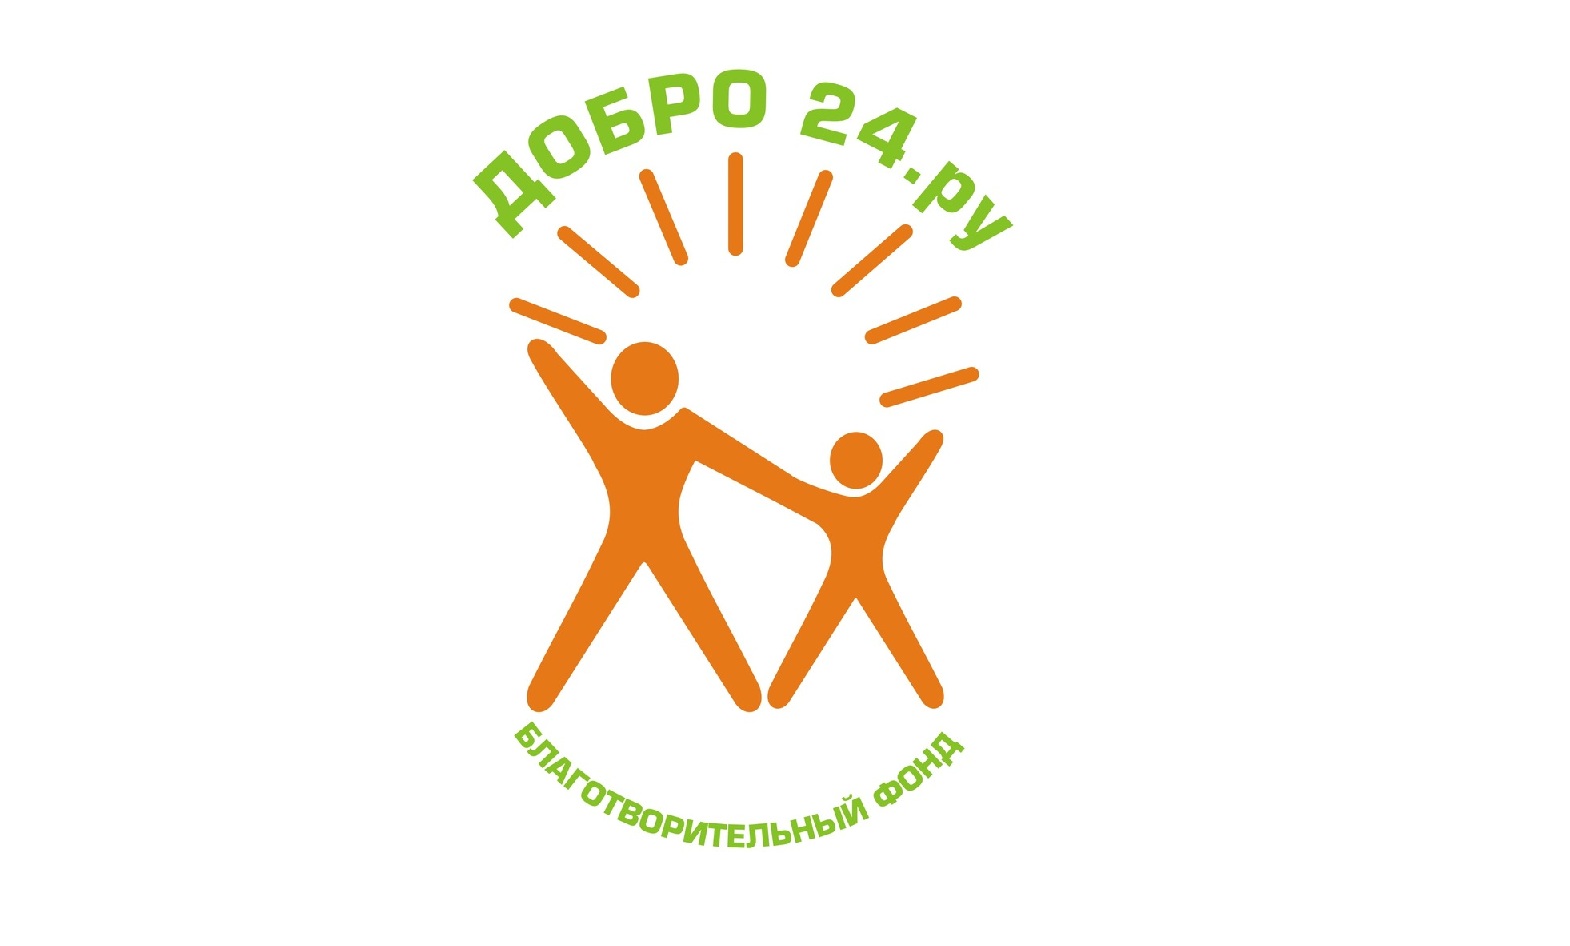 Добро 24 часа. Эмблема волонтерства. Добровольческое движение логотип. Волонтерство картинки. Эмблема волонтерского движения в России.